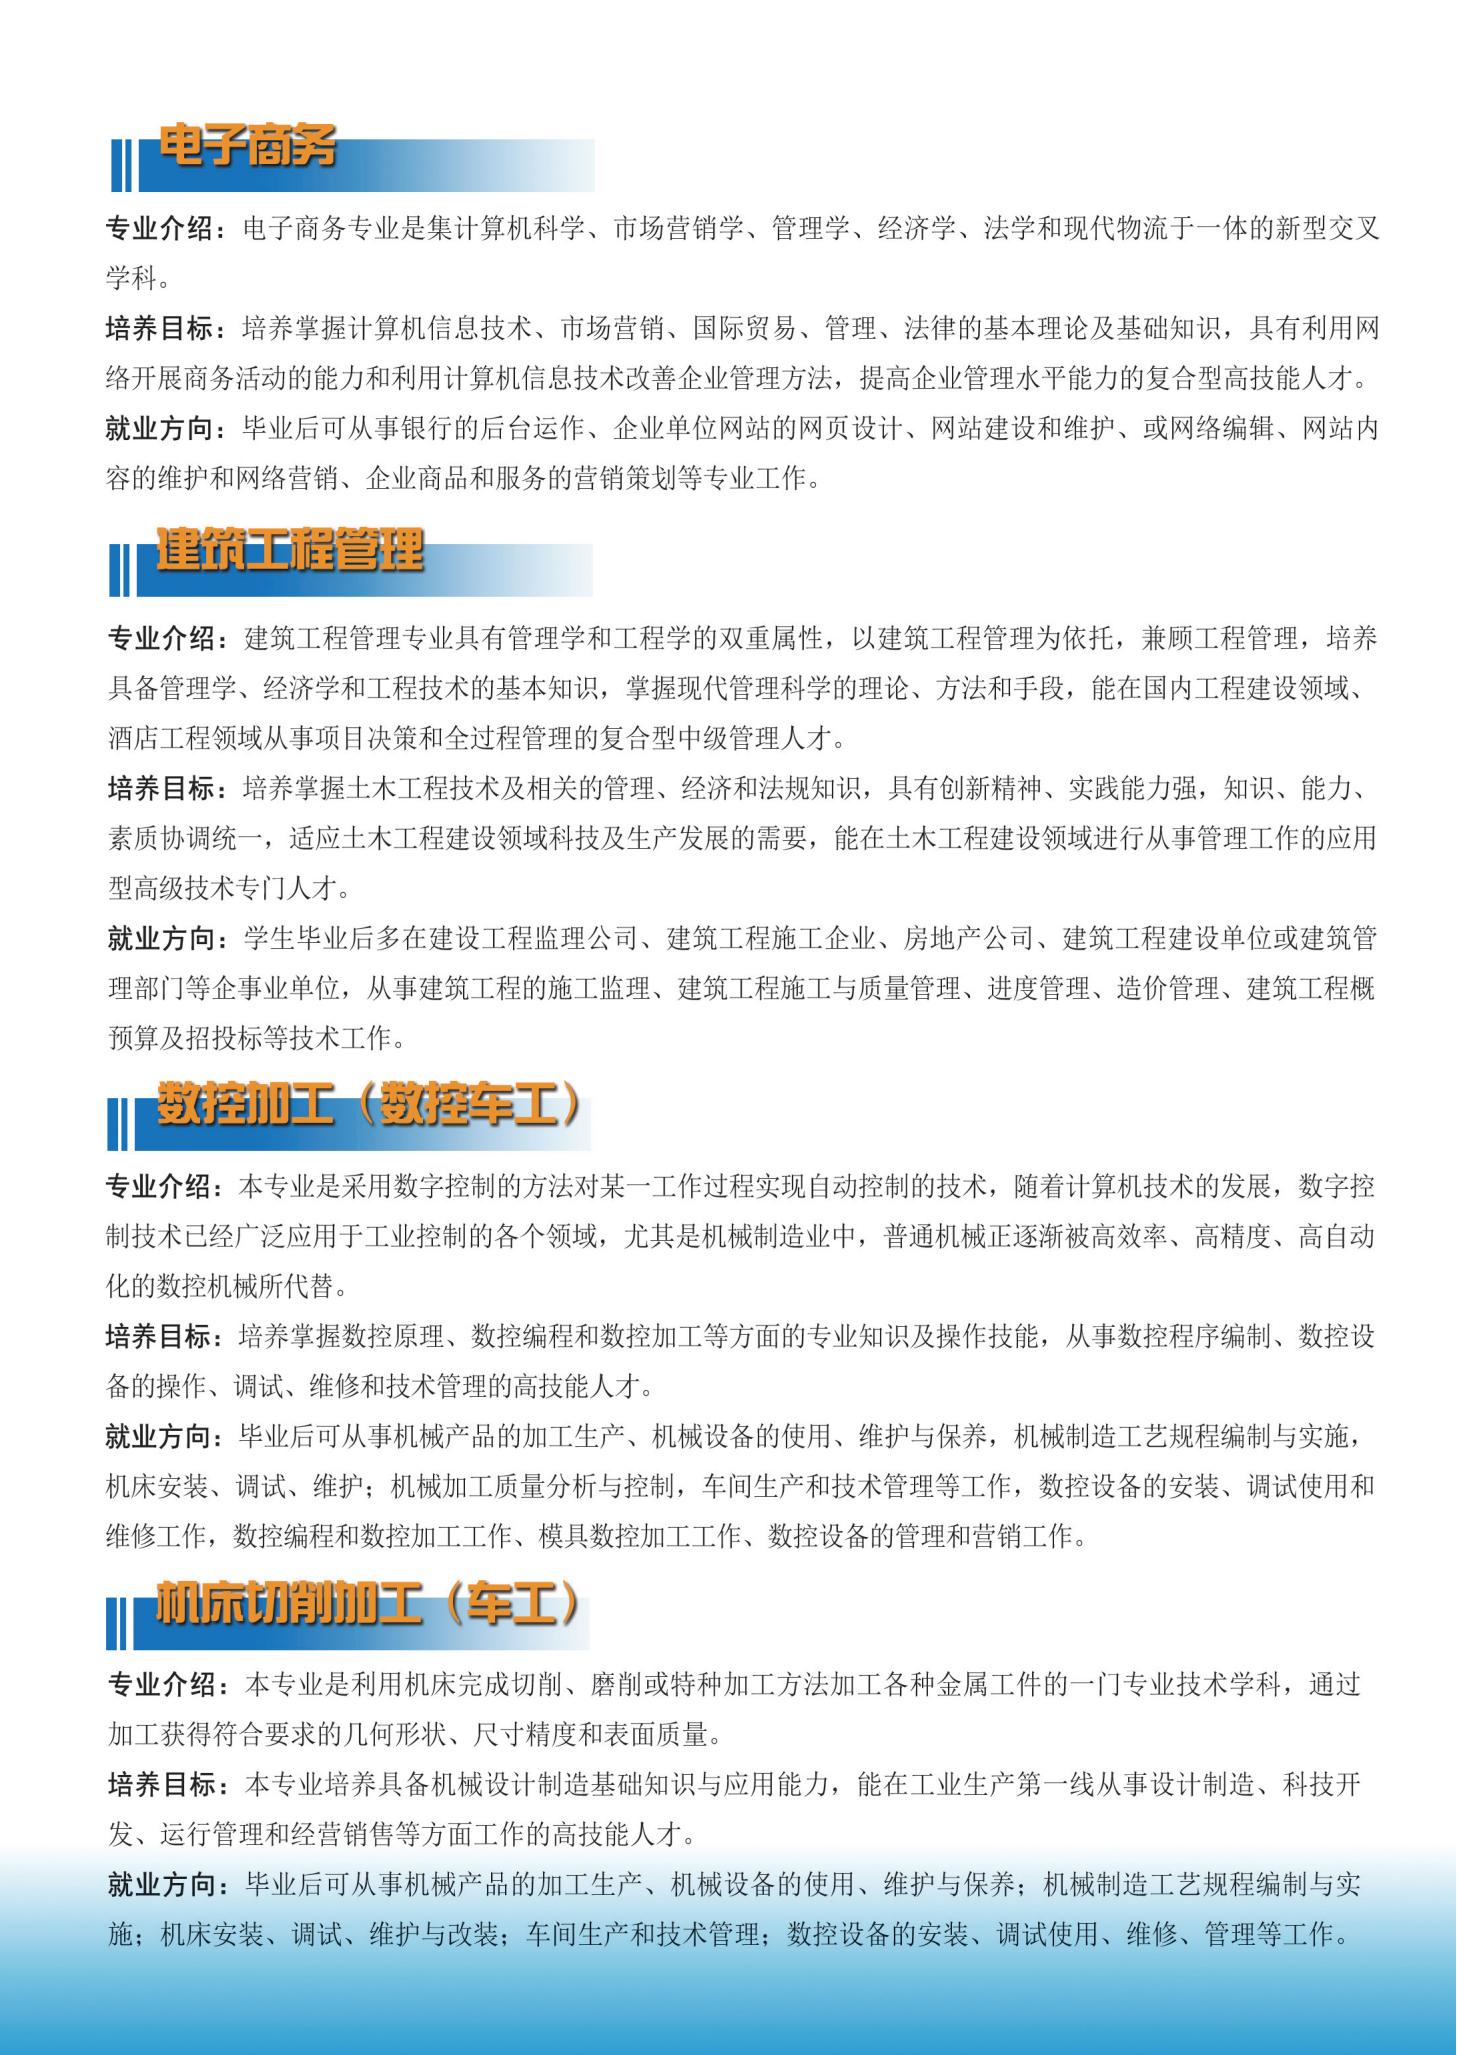 云南铜业高级技工学校招生宣传折页_05.jpg